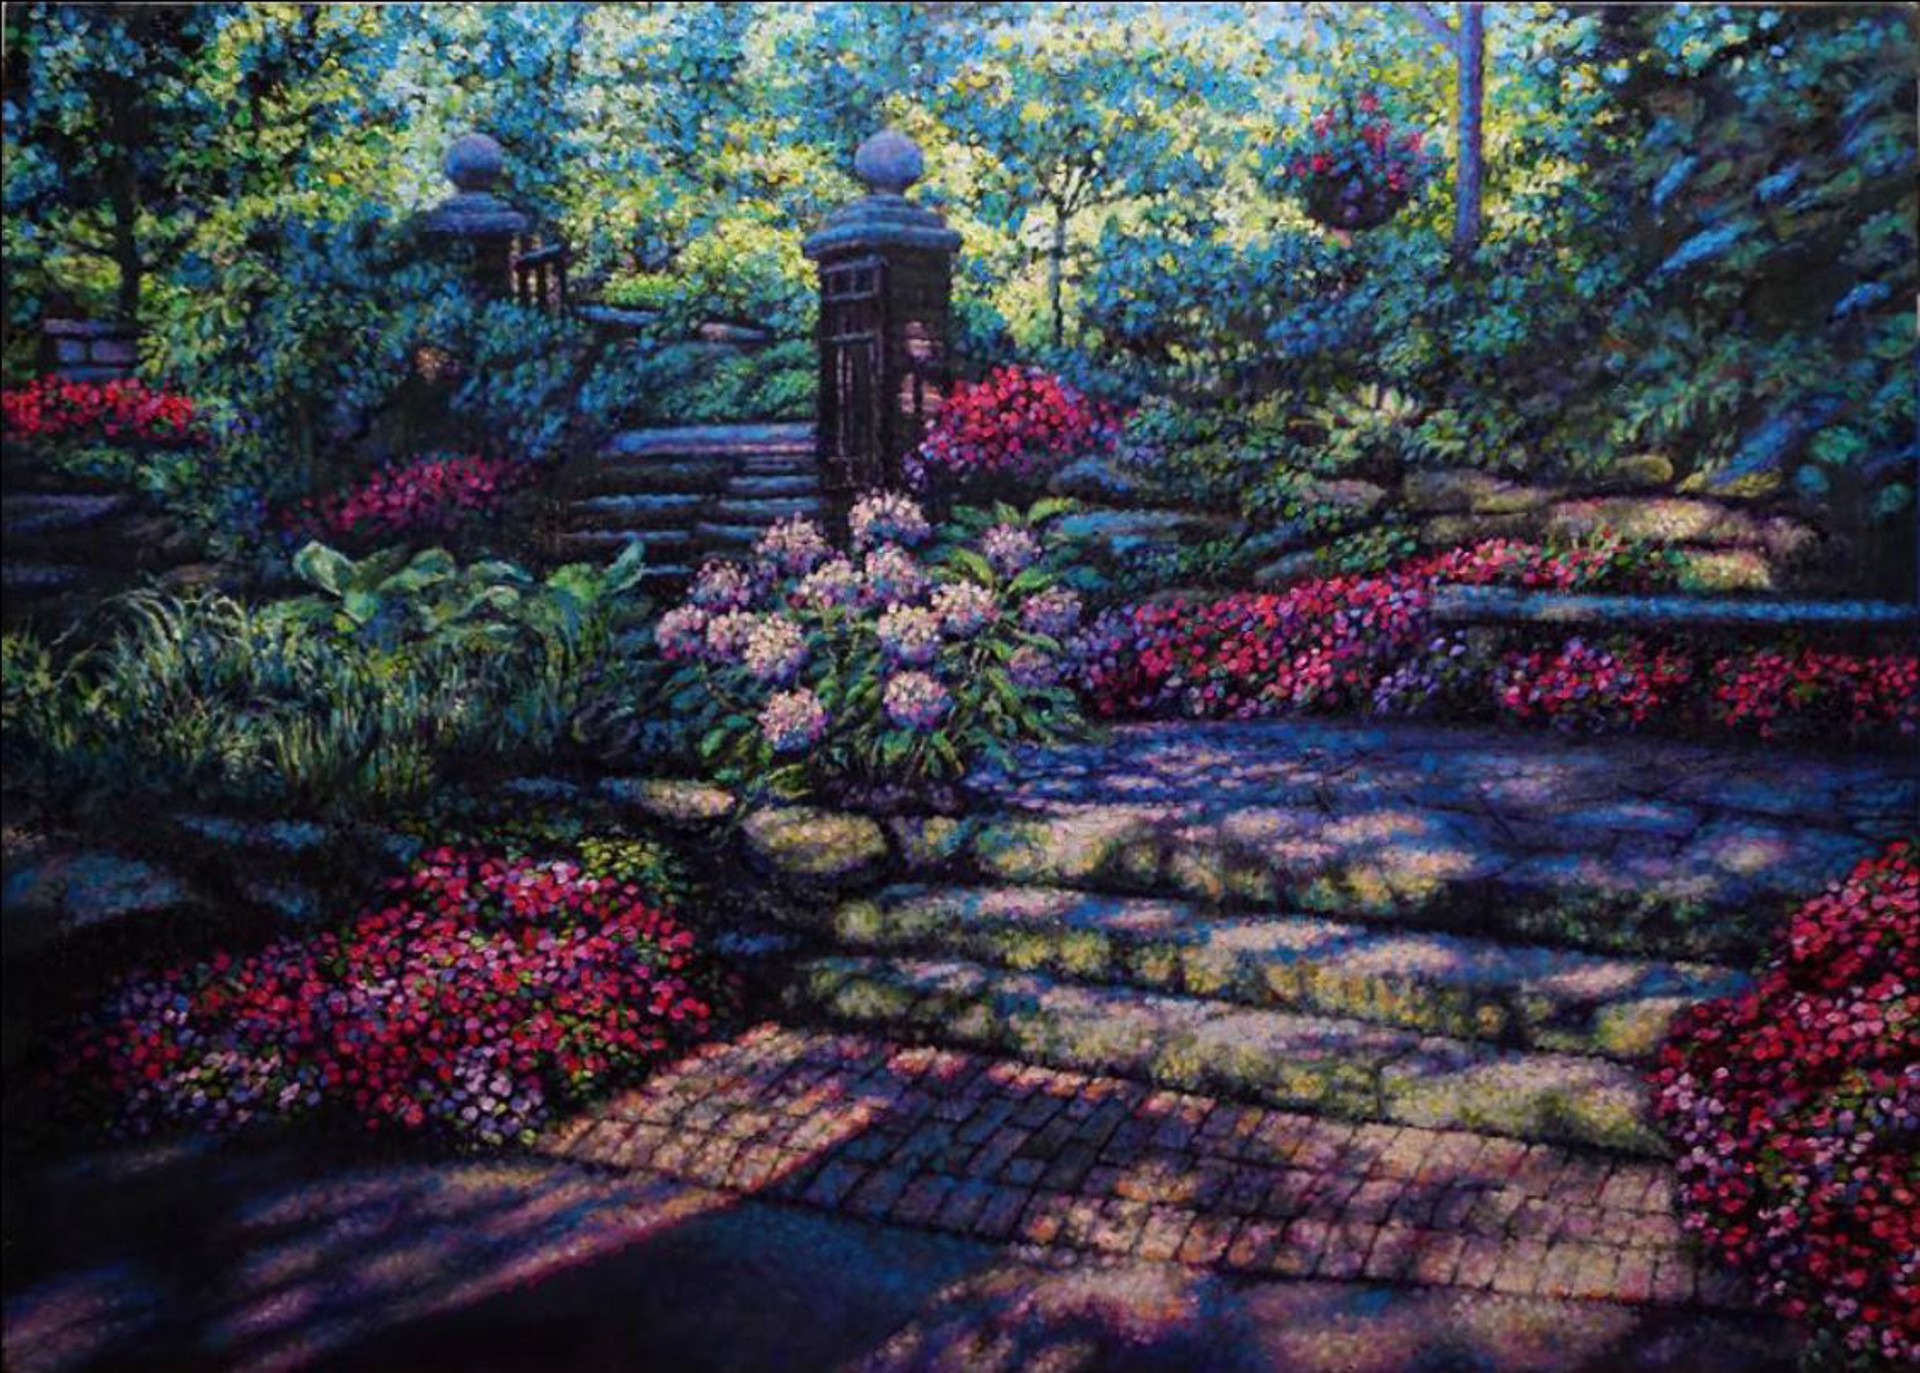 Garden Scene SG-203 by Eddie Mitchell